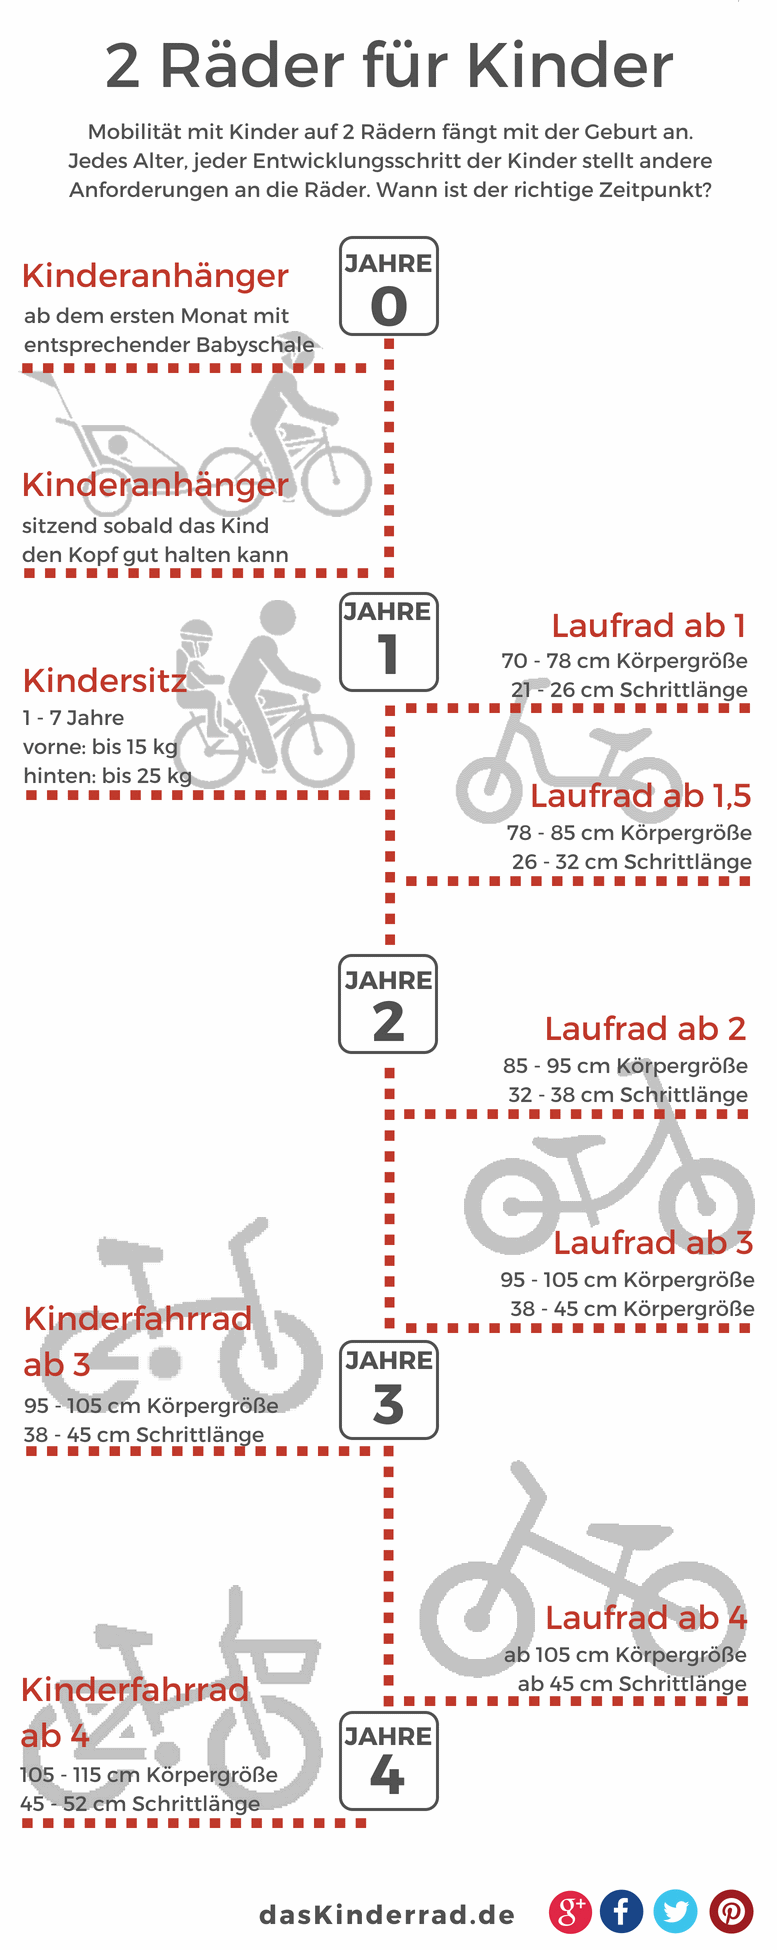 Laufräder und Fahrräder für Kinder im Vergleich